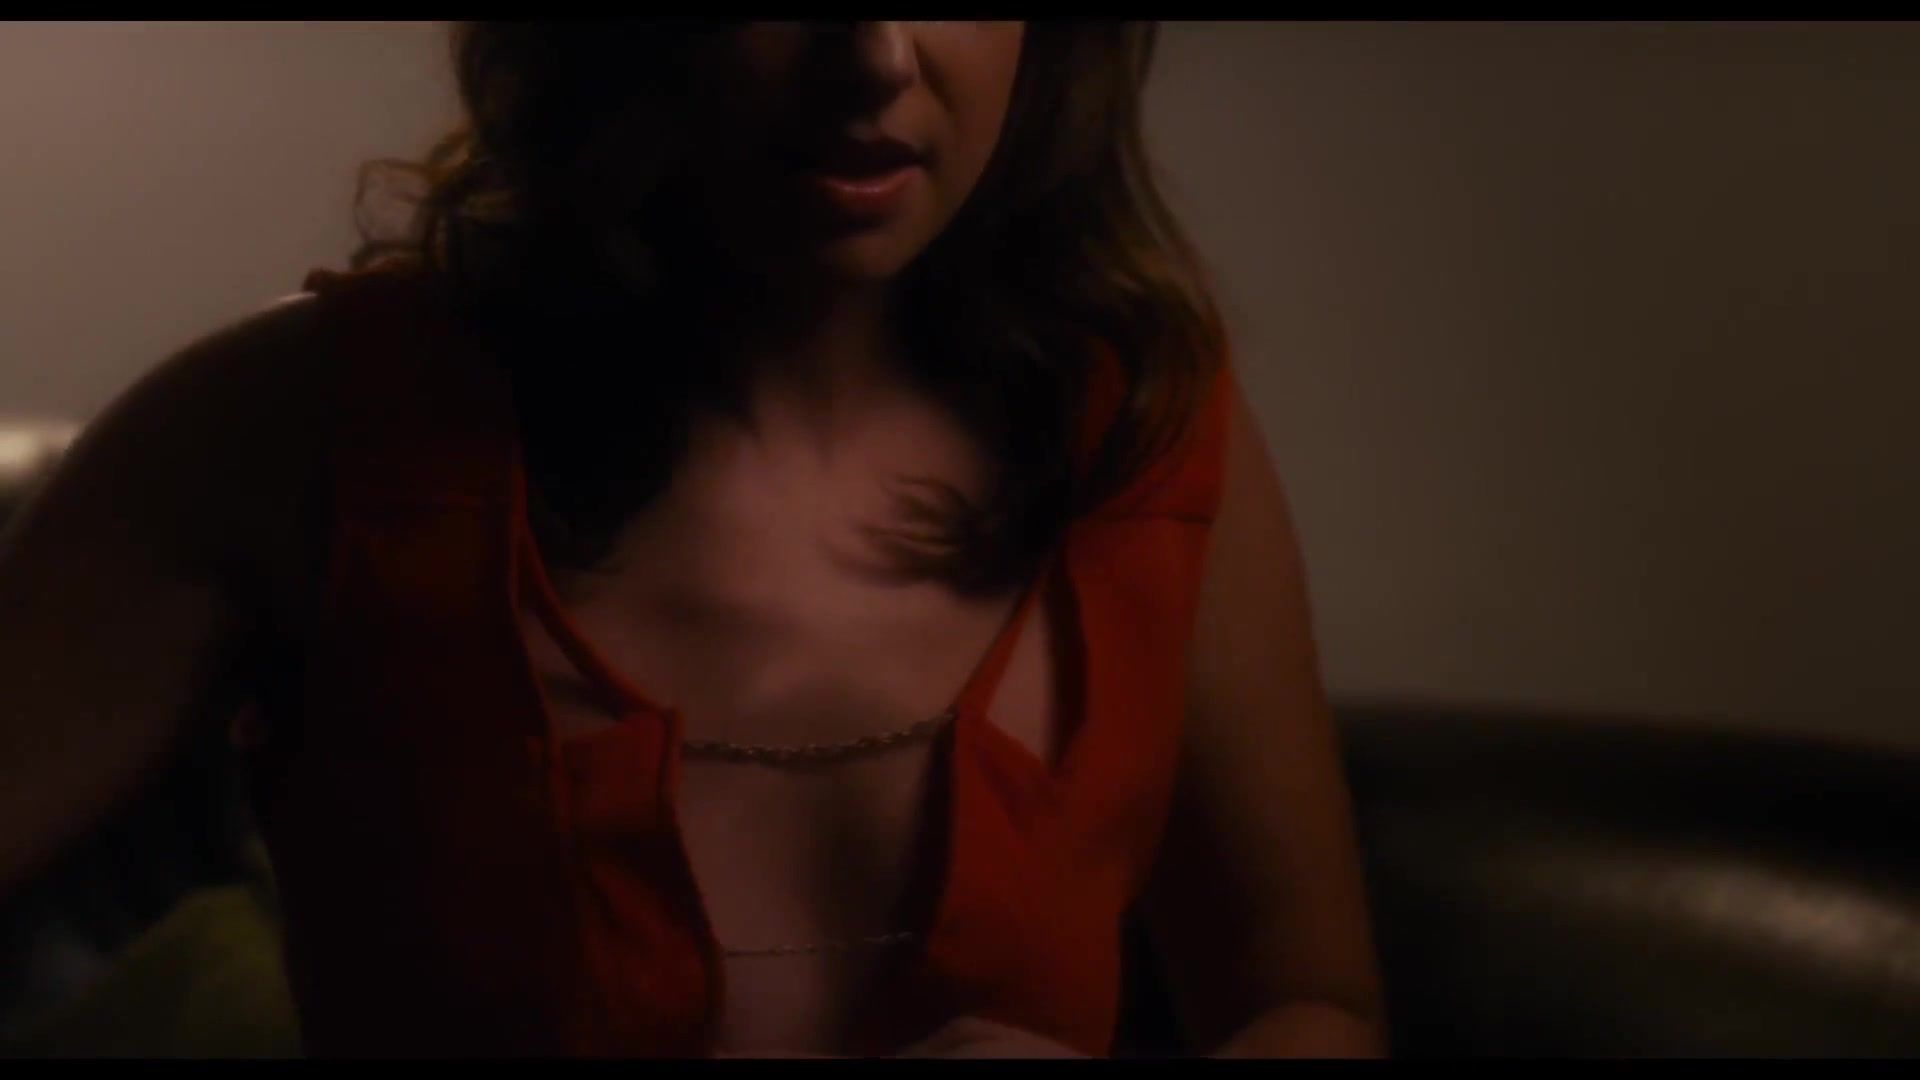 Penetration Diane Farr Nude & Sugar Lyn Beard Nude - Sex Scene from movie Palm Swings (2017) HD Big Asian Tits - 2